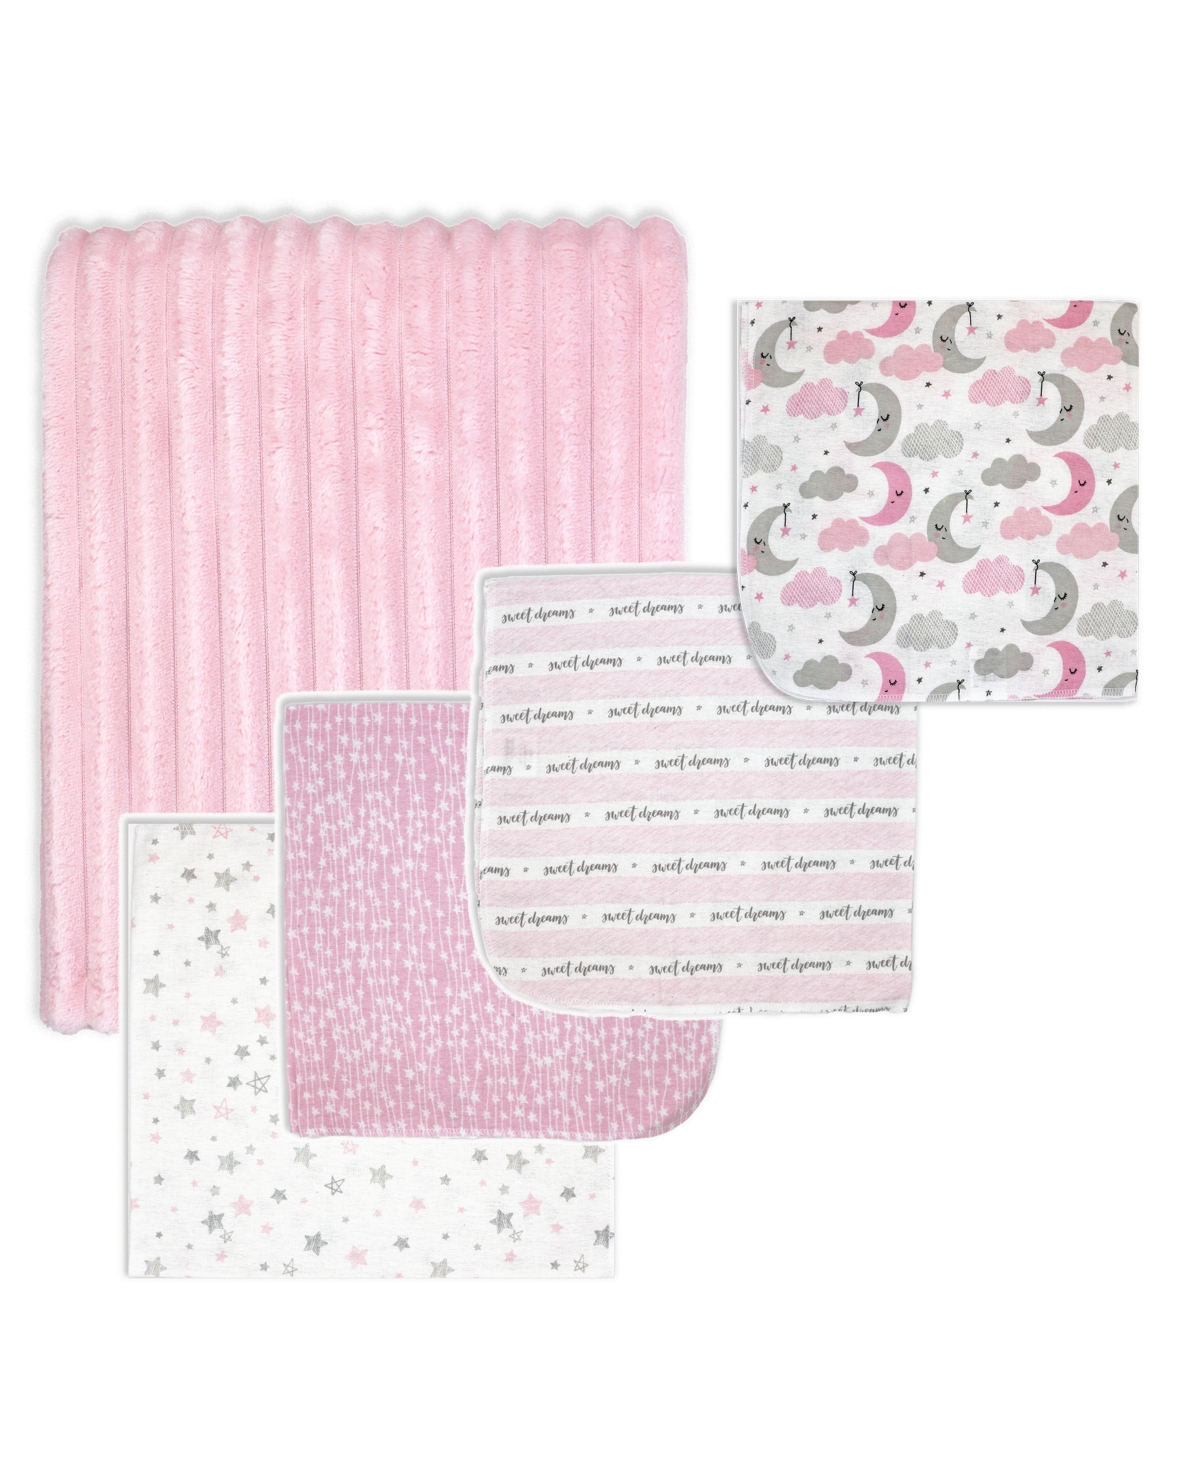 Tendertyme Baby Girls Sweet Dreams Baby Blankets, 5 Piece Gift Set In Pink